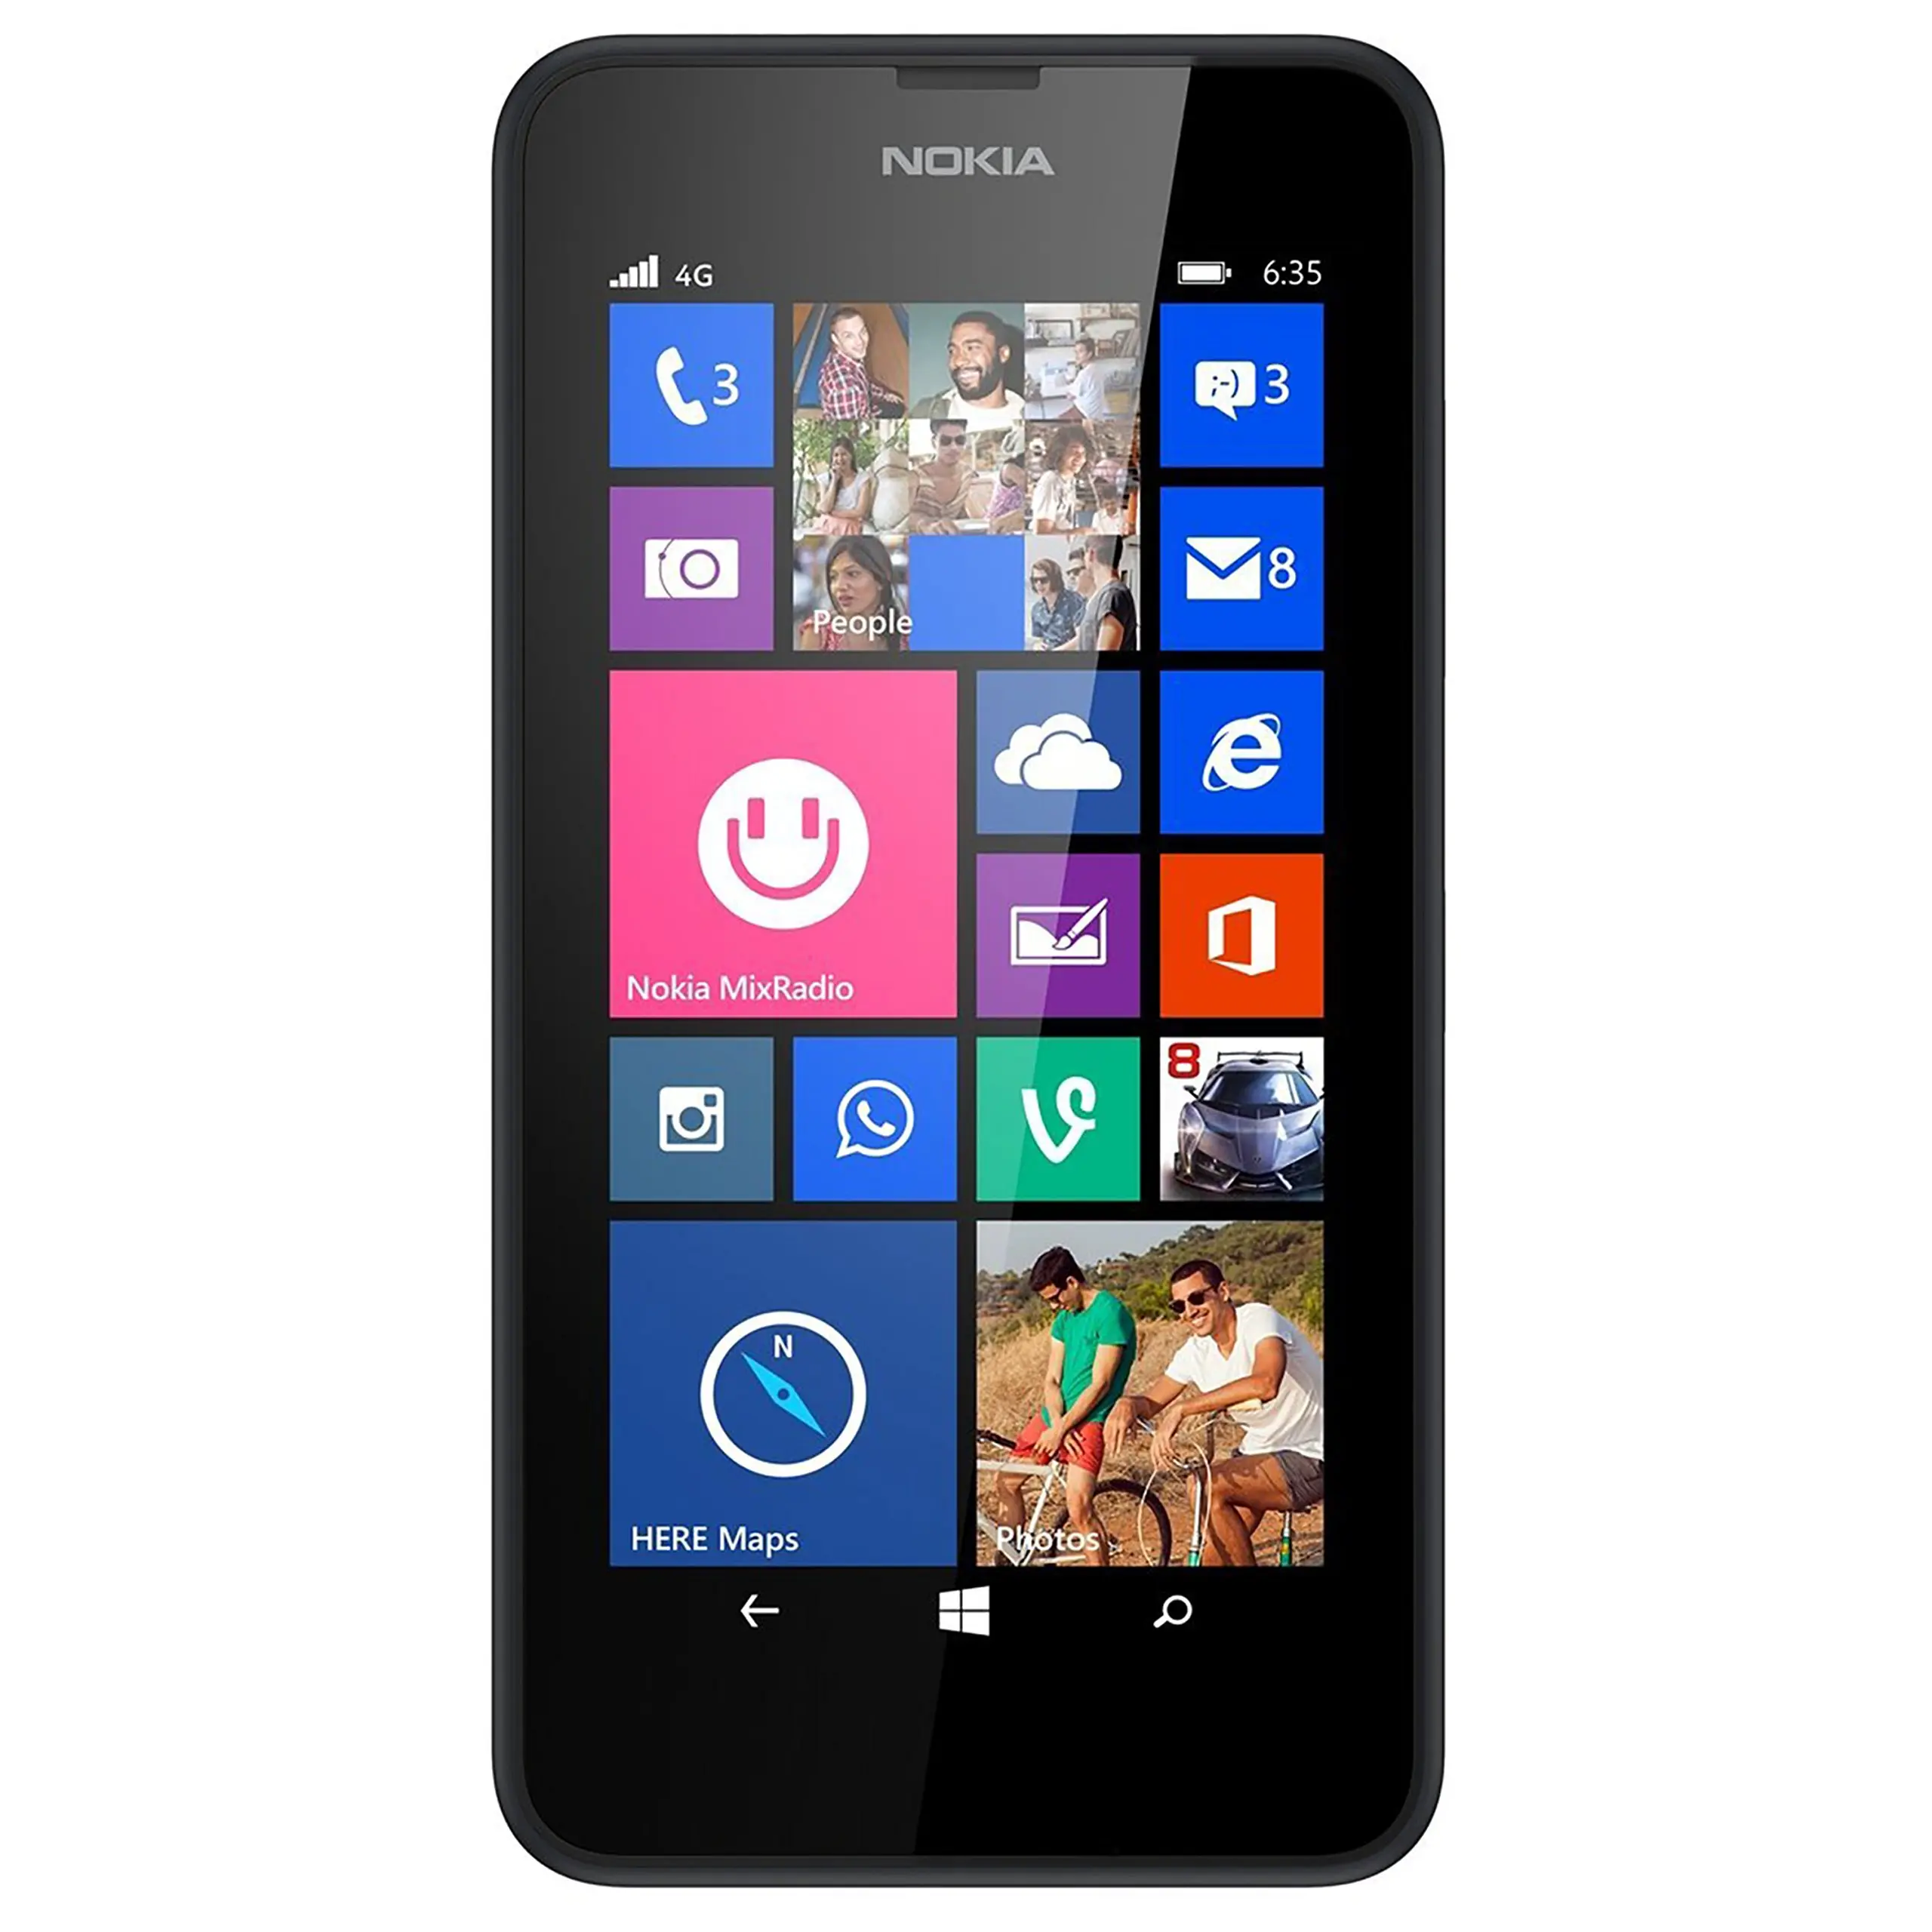 pantalla nokia lumia 635 precio - Cómo actualizar un celular Nokia Lumia 635